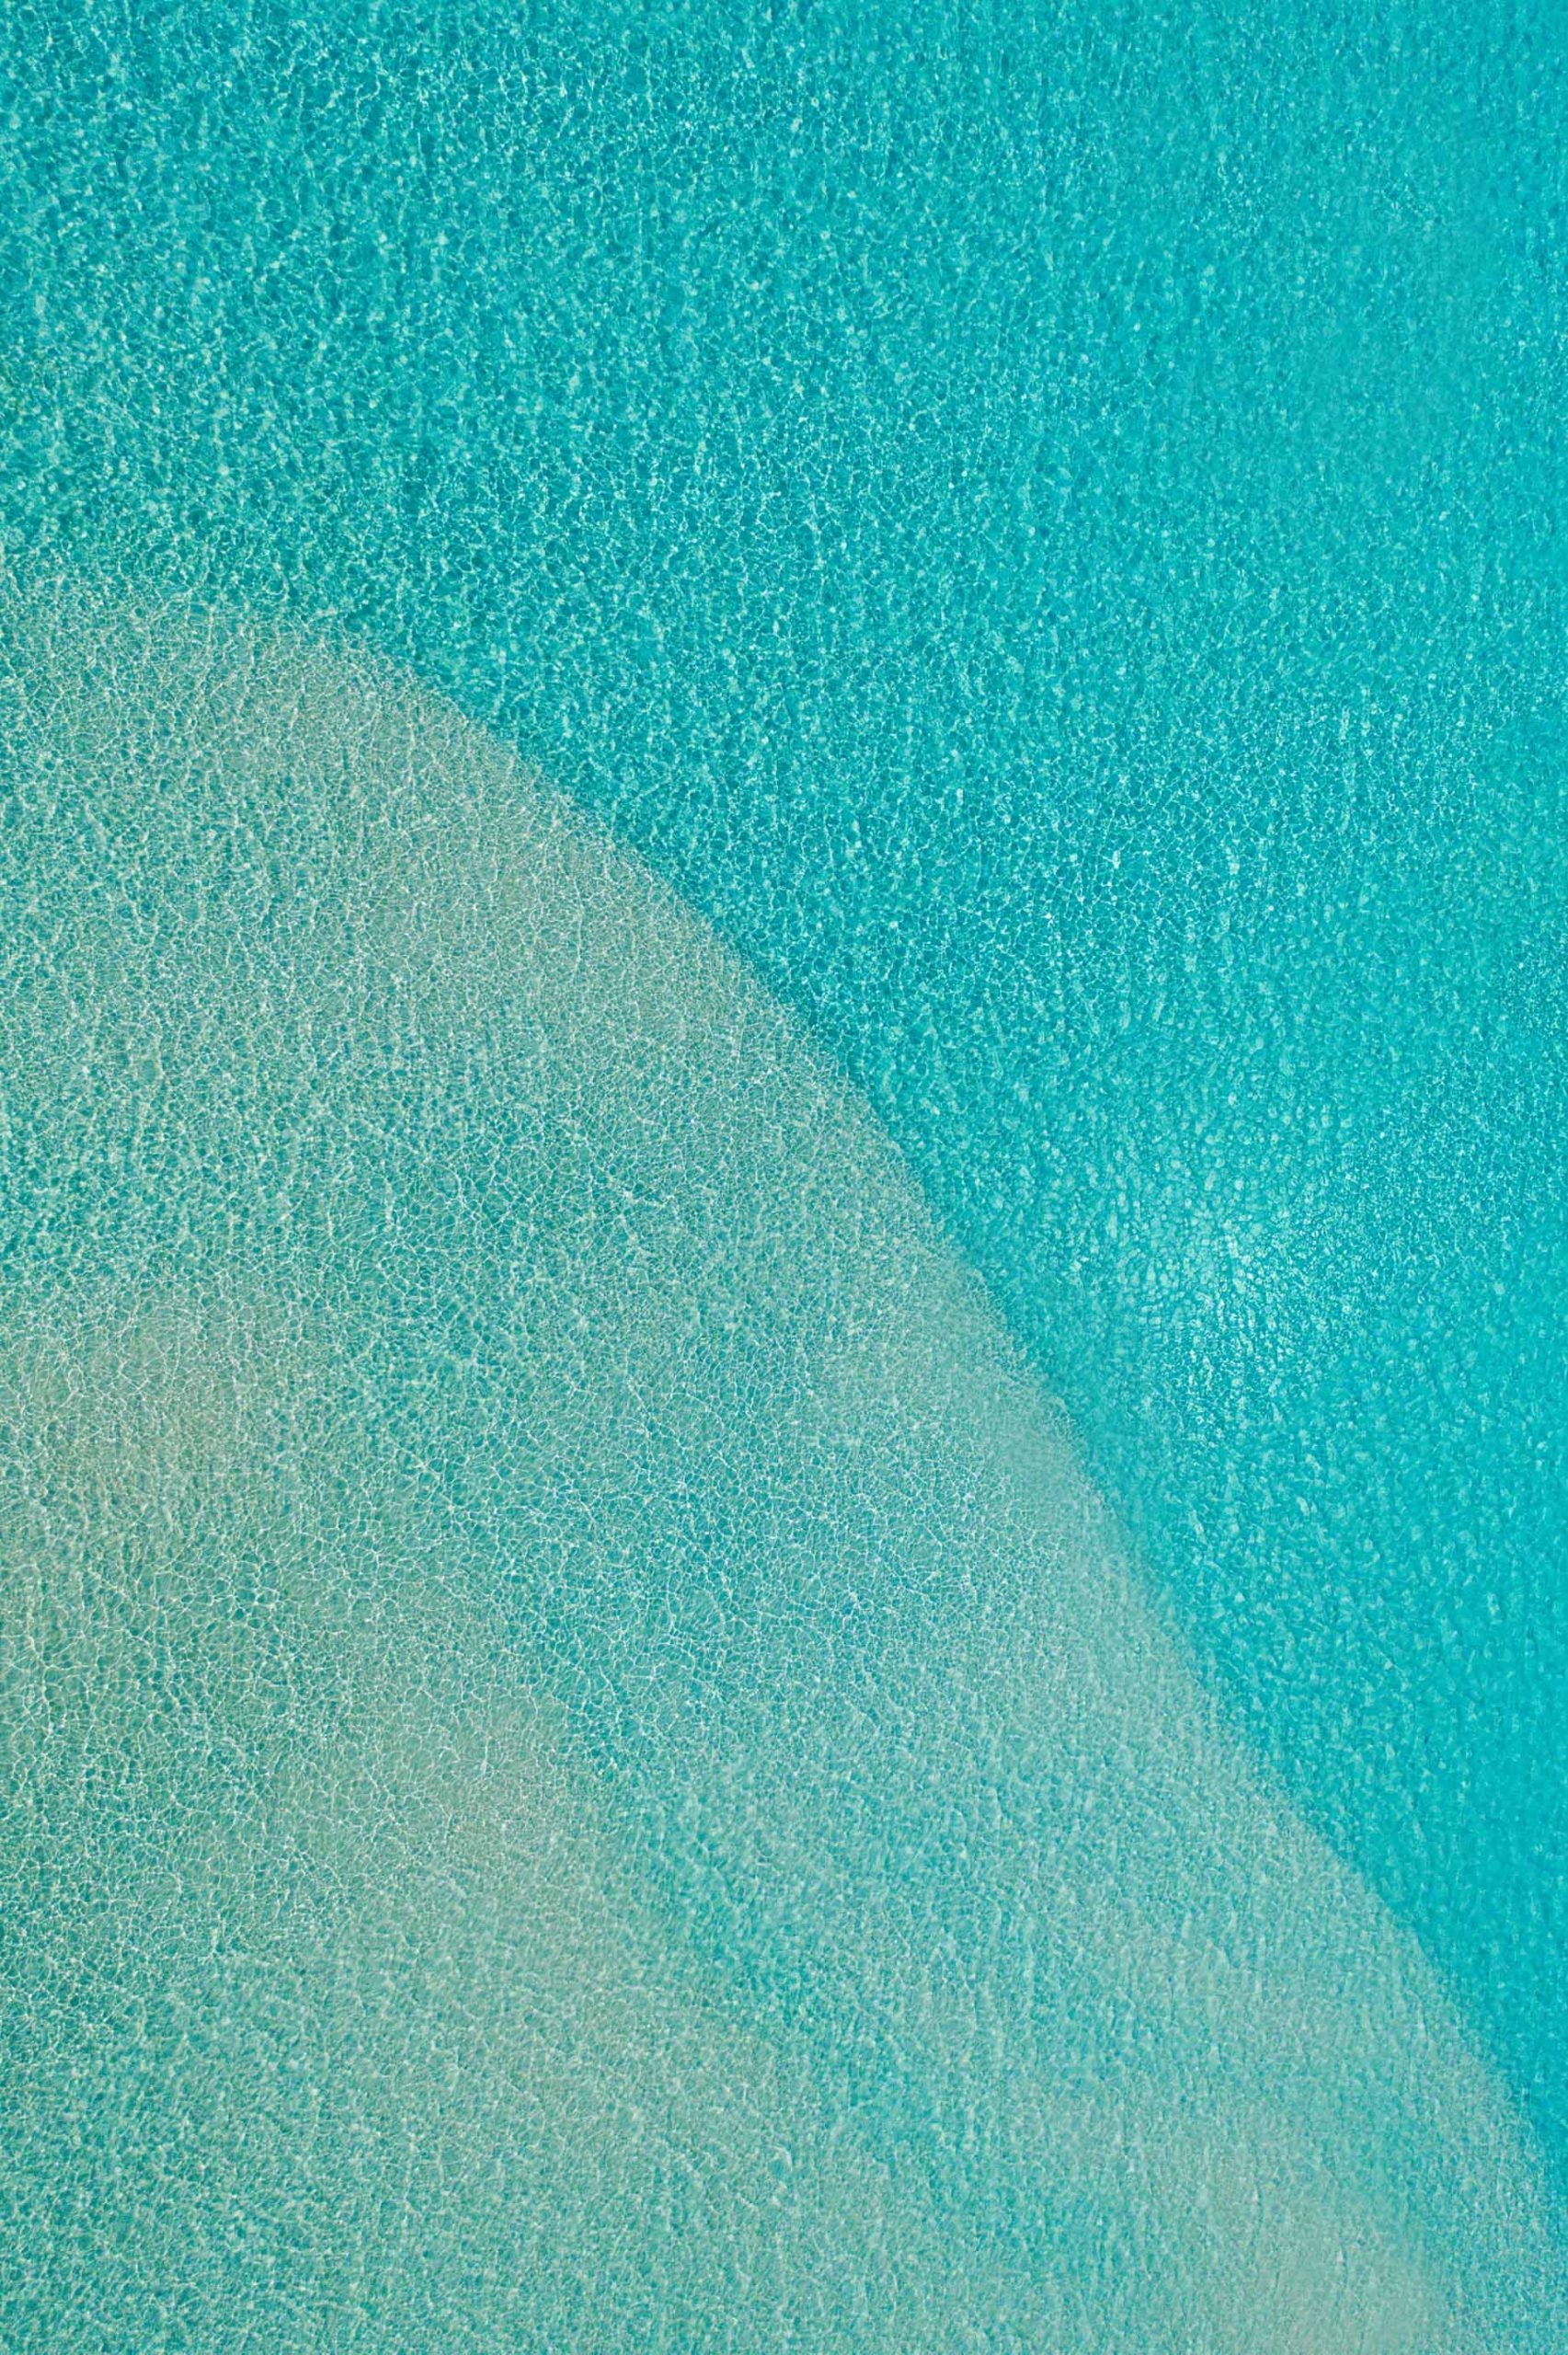 Soneva Jani Resort – Noonu Atoll, Medhufaru, Maldives – Tropical Ocean Water Aerial